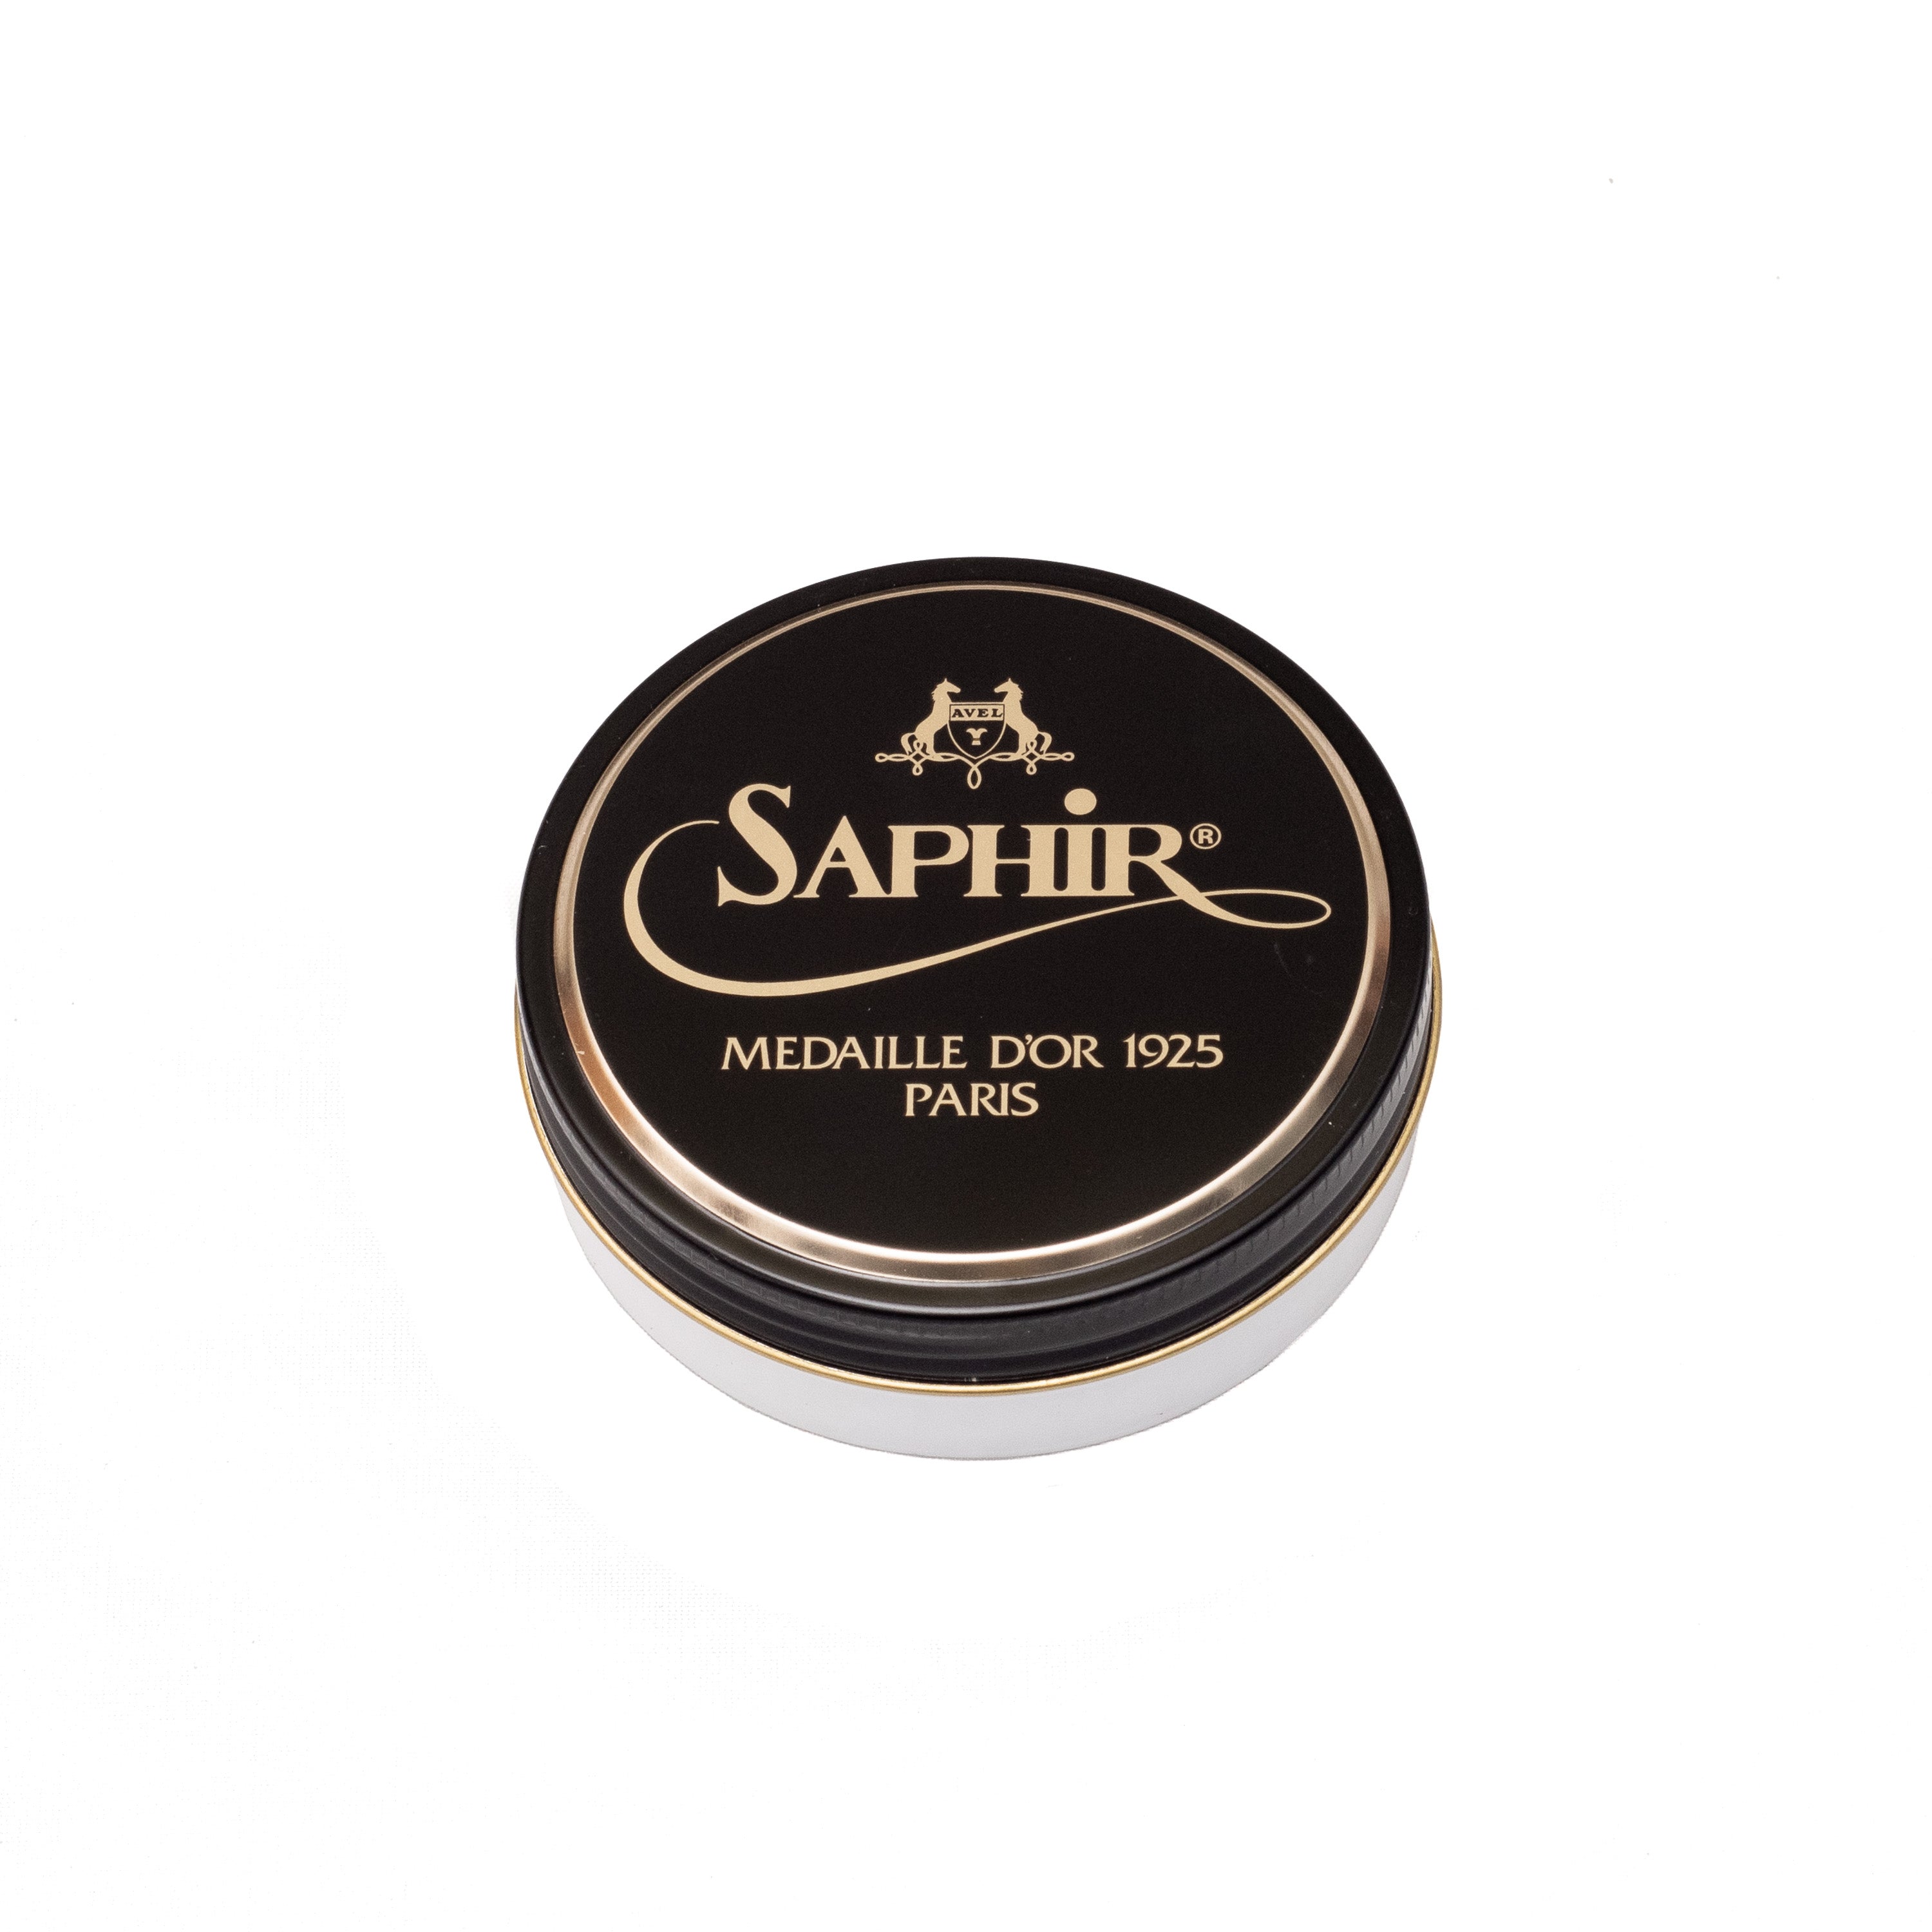 Saphir Medaille D'or Wax Polish 50ml - Neutral